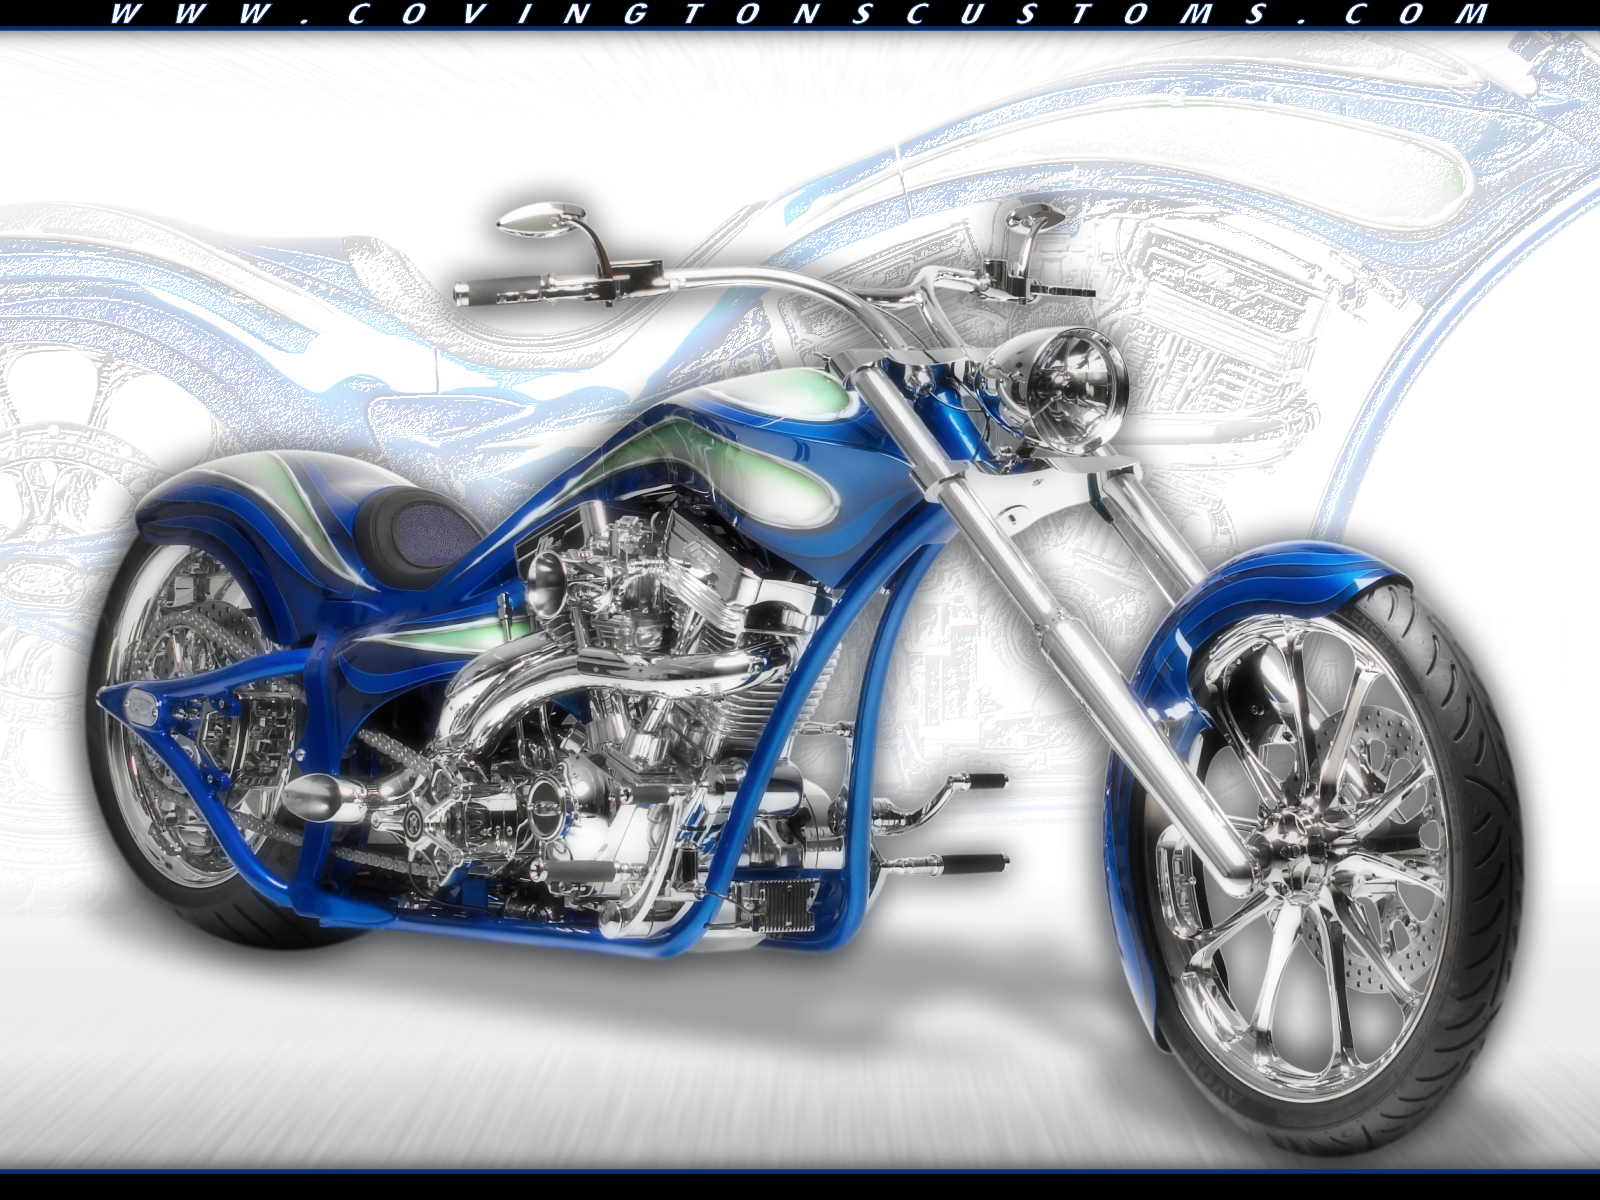 Covingtons Custom Motorcycle Wallpaper bg26jpg